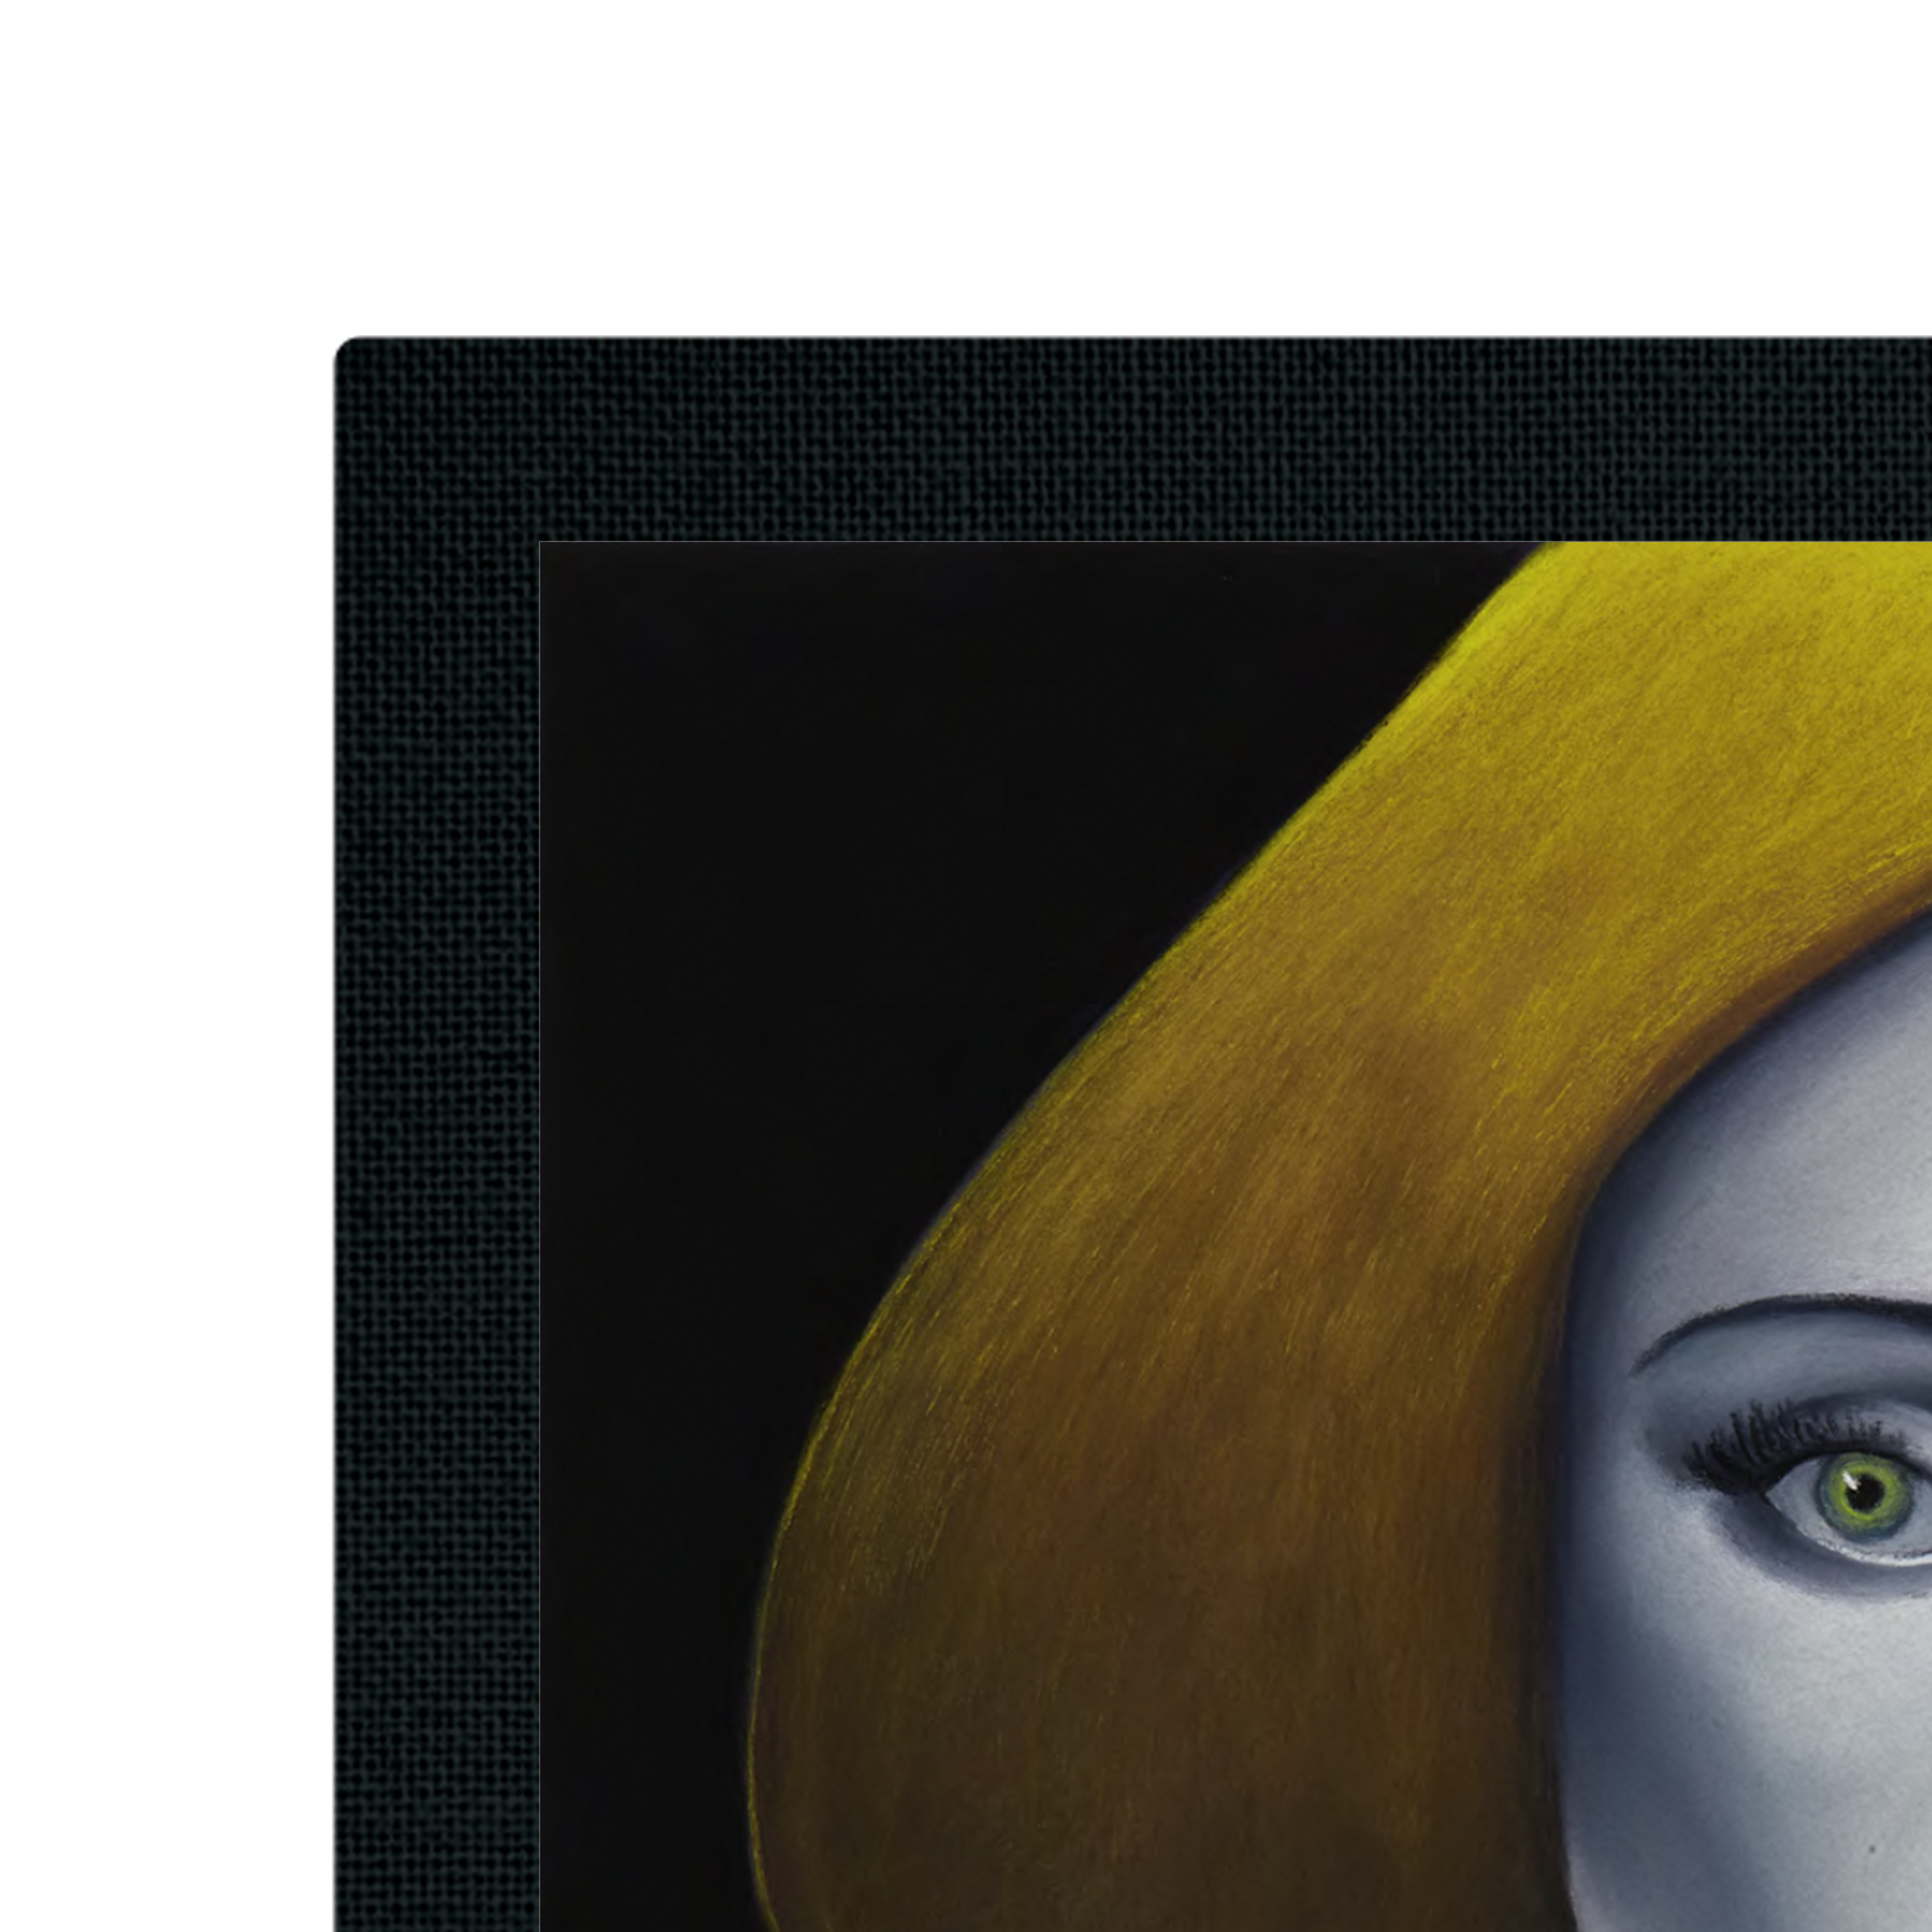 Alternate View 3 of Lady Gaga - Joanne by Nicolas Party Gallery Vinyl